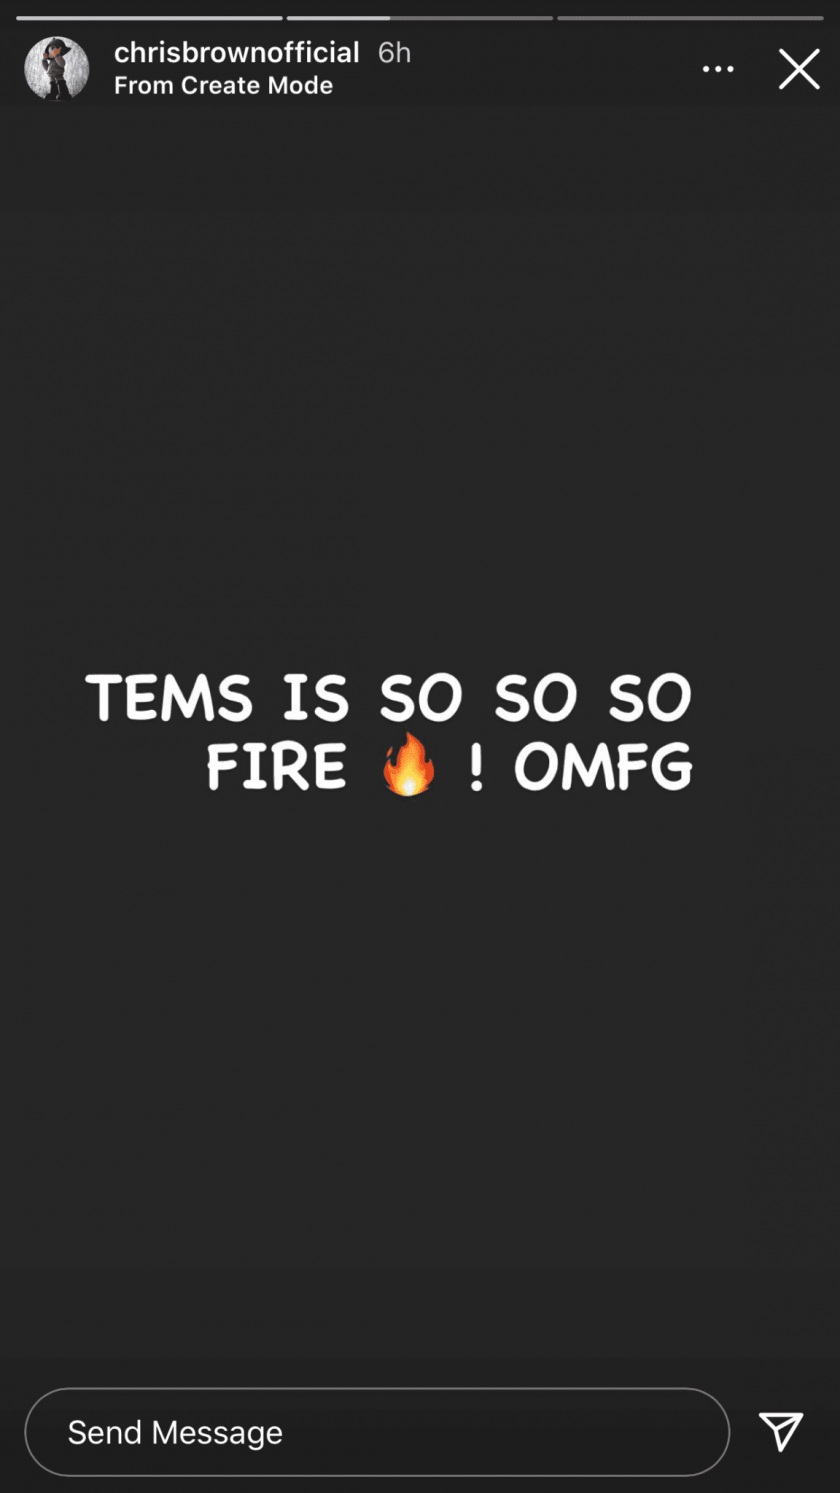 'Tems is so so FIRE!...' Chris Brown Testifies